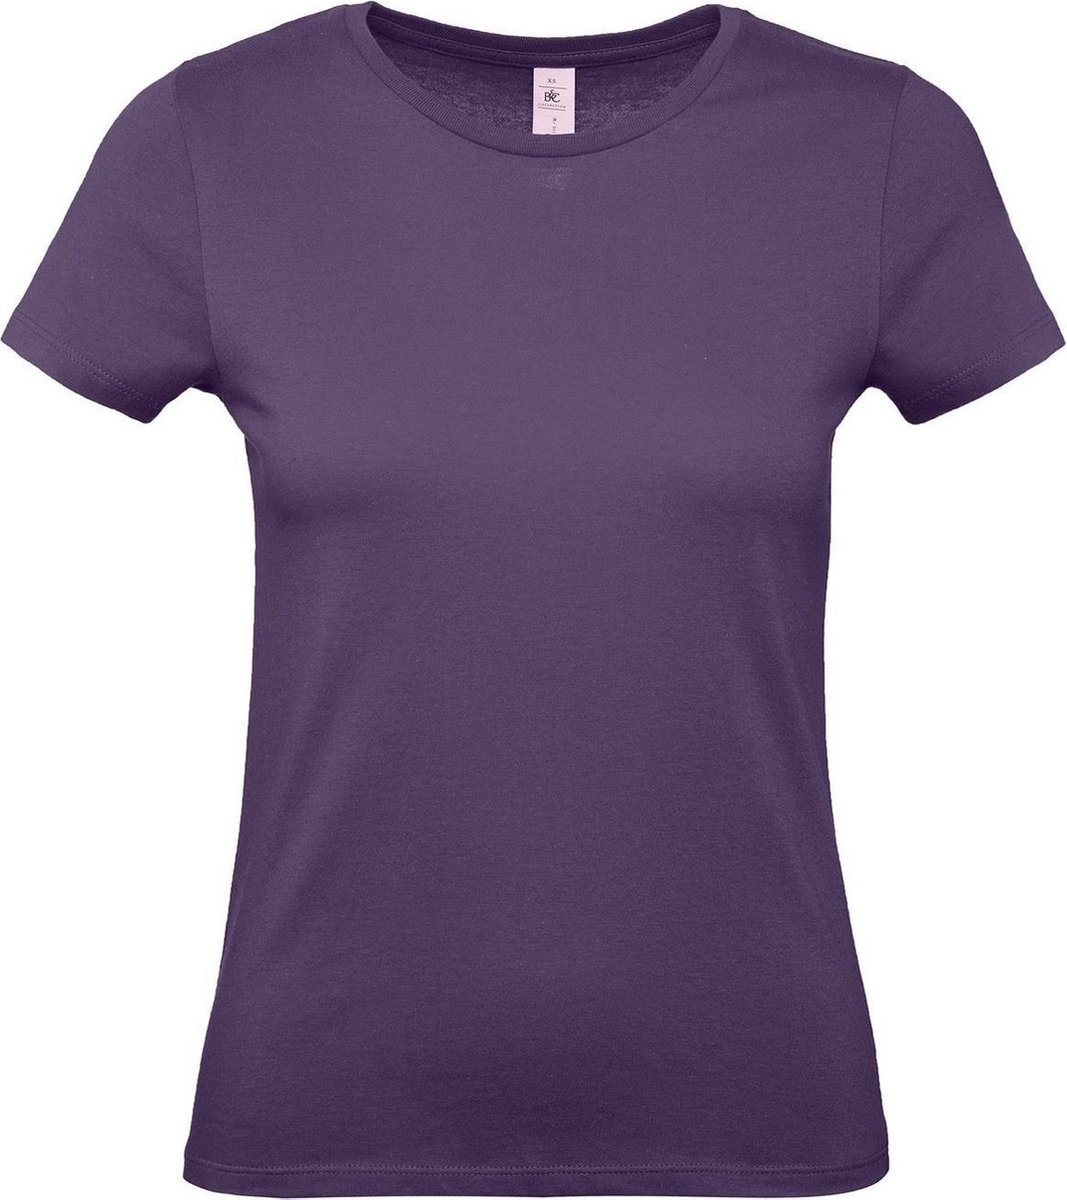 Set van 3x stuks paars basic t-shirts met ronde hals voor dames - katoen - 145 grams - paarse shirts / kleding, maat: 2XL (44)